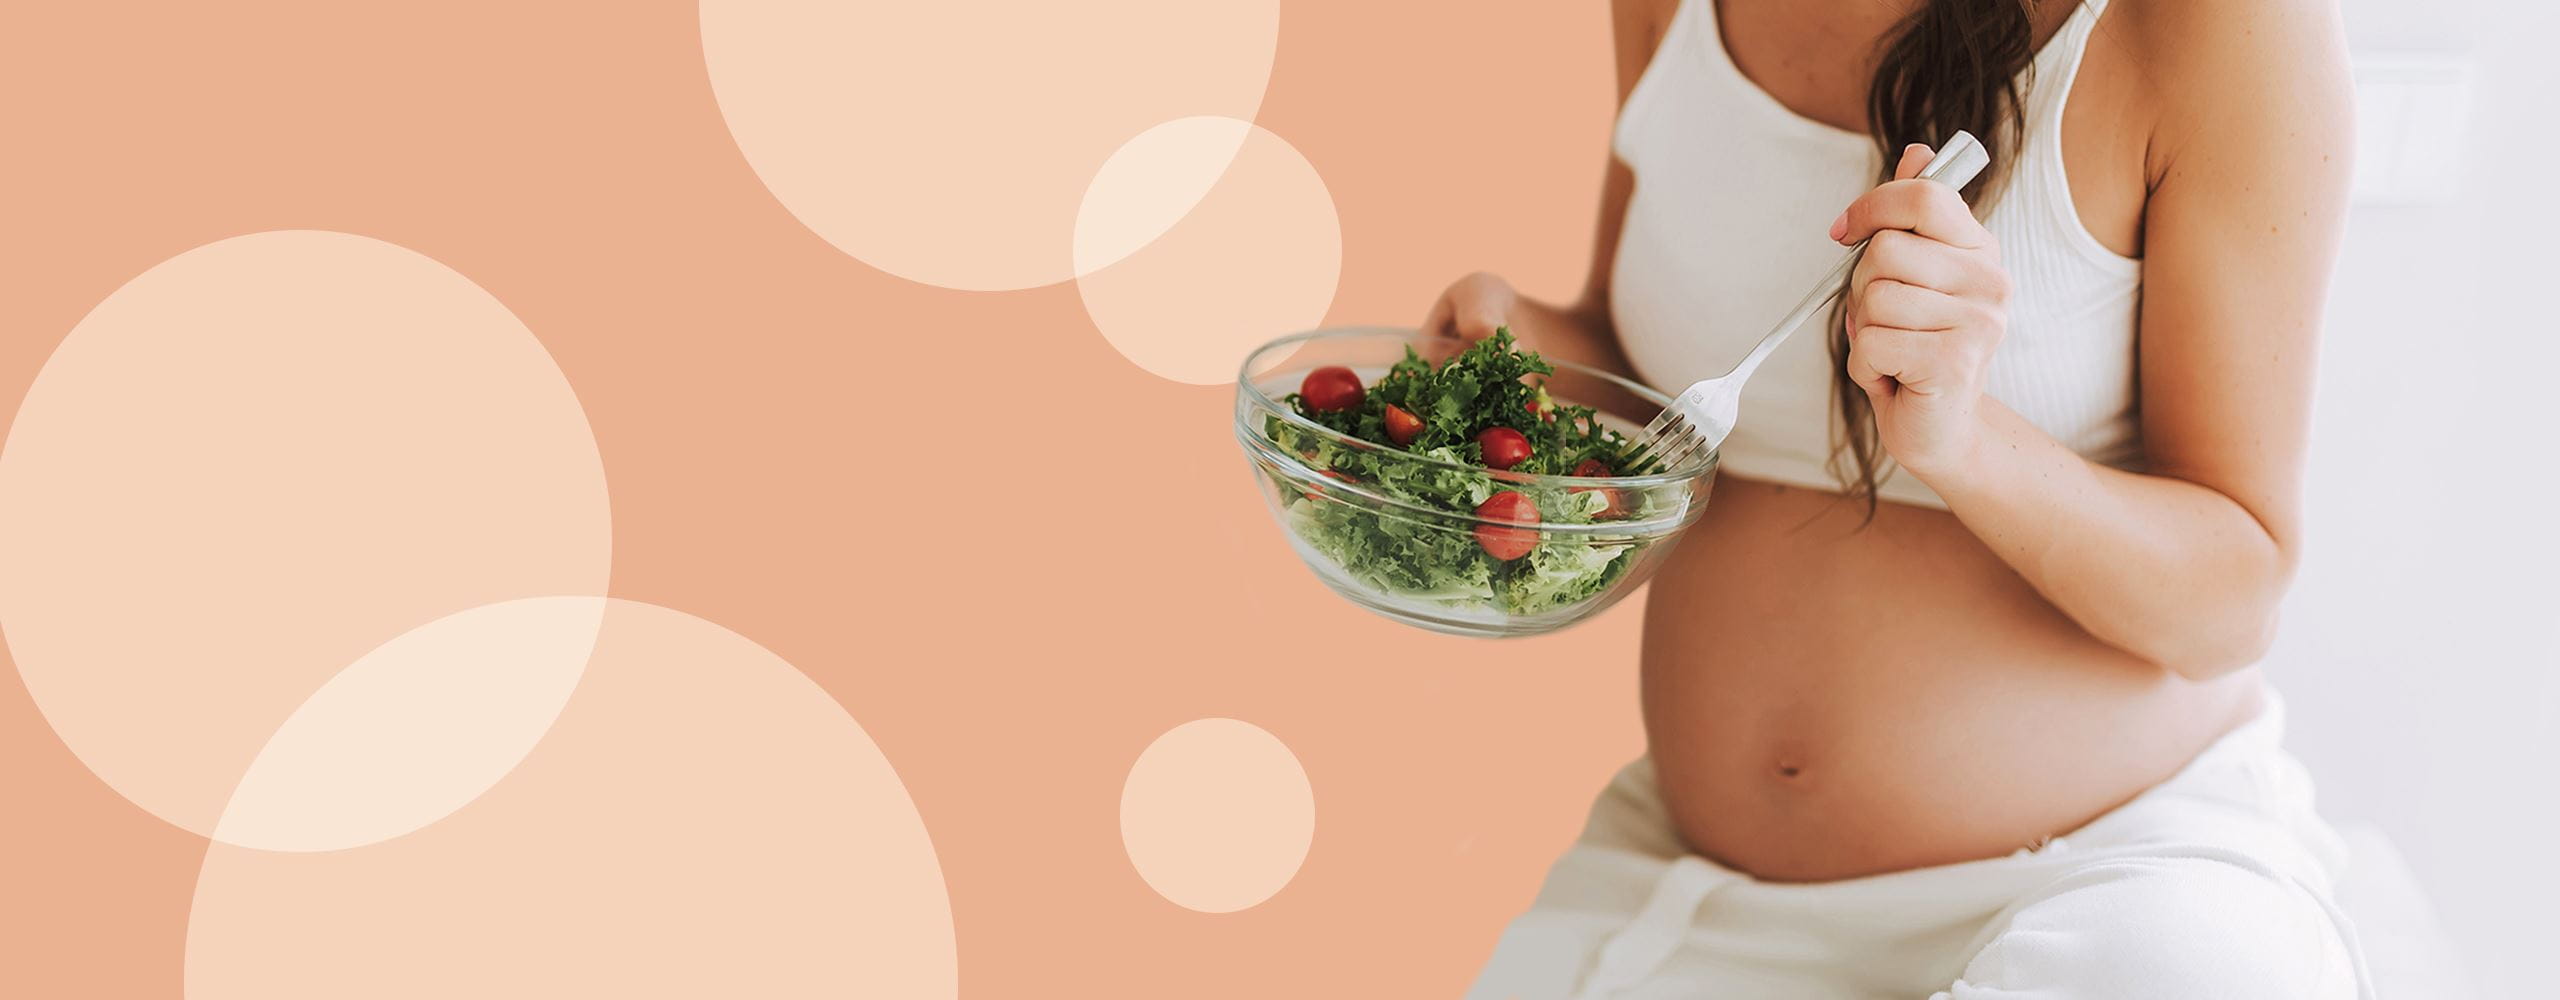 Dieta w ciąży - co powinna jeść kobieta w ciąży?